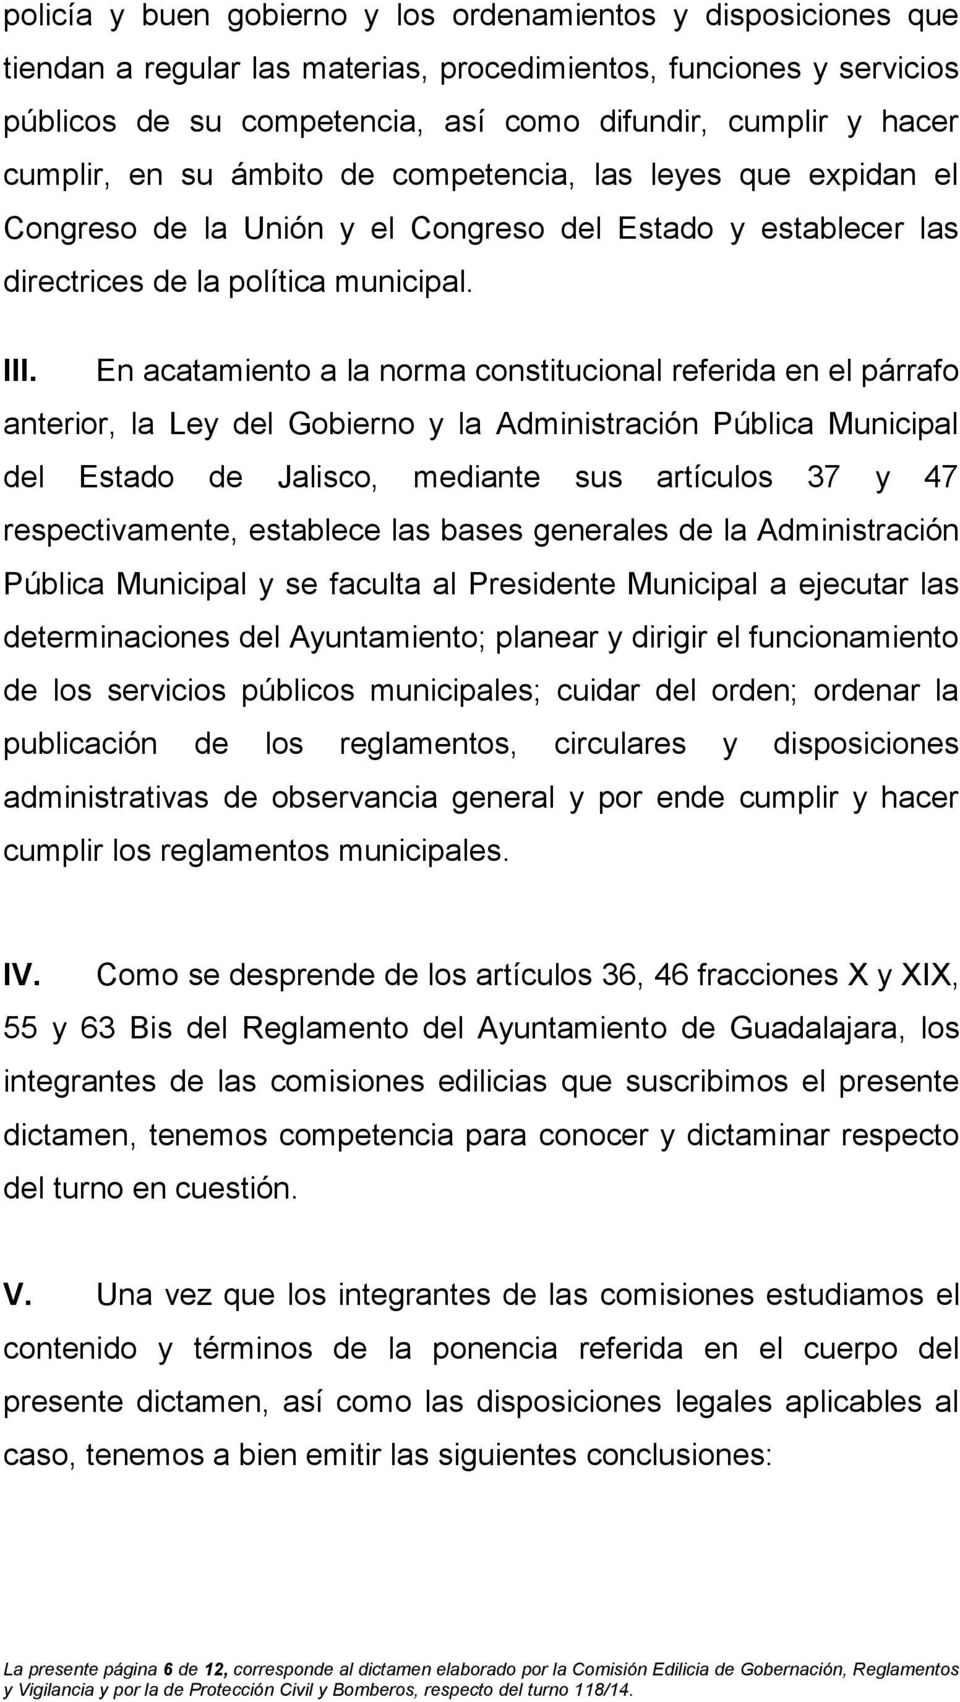 En acatamiento a la norma constitucional referida en el párrafo anterior, la Ley del Gobierno y la Administración Pública Municipal del Estado de Jalisco, mediante sus artículos 37 y 47